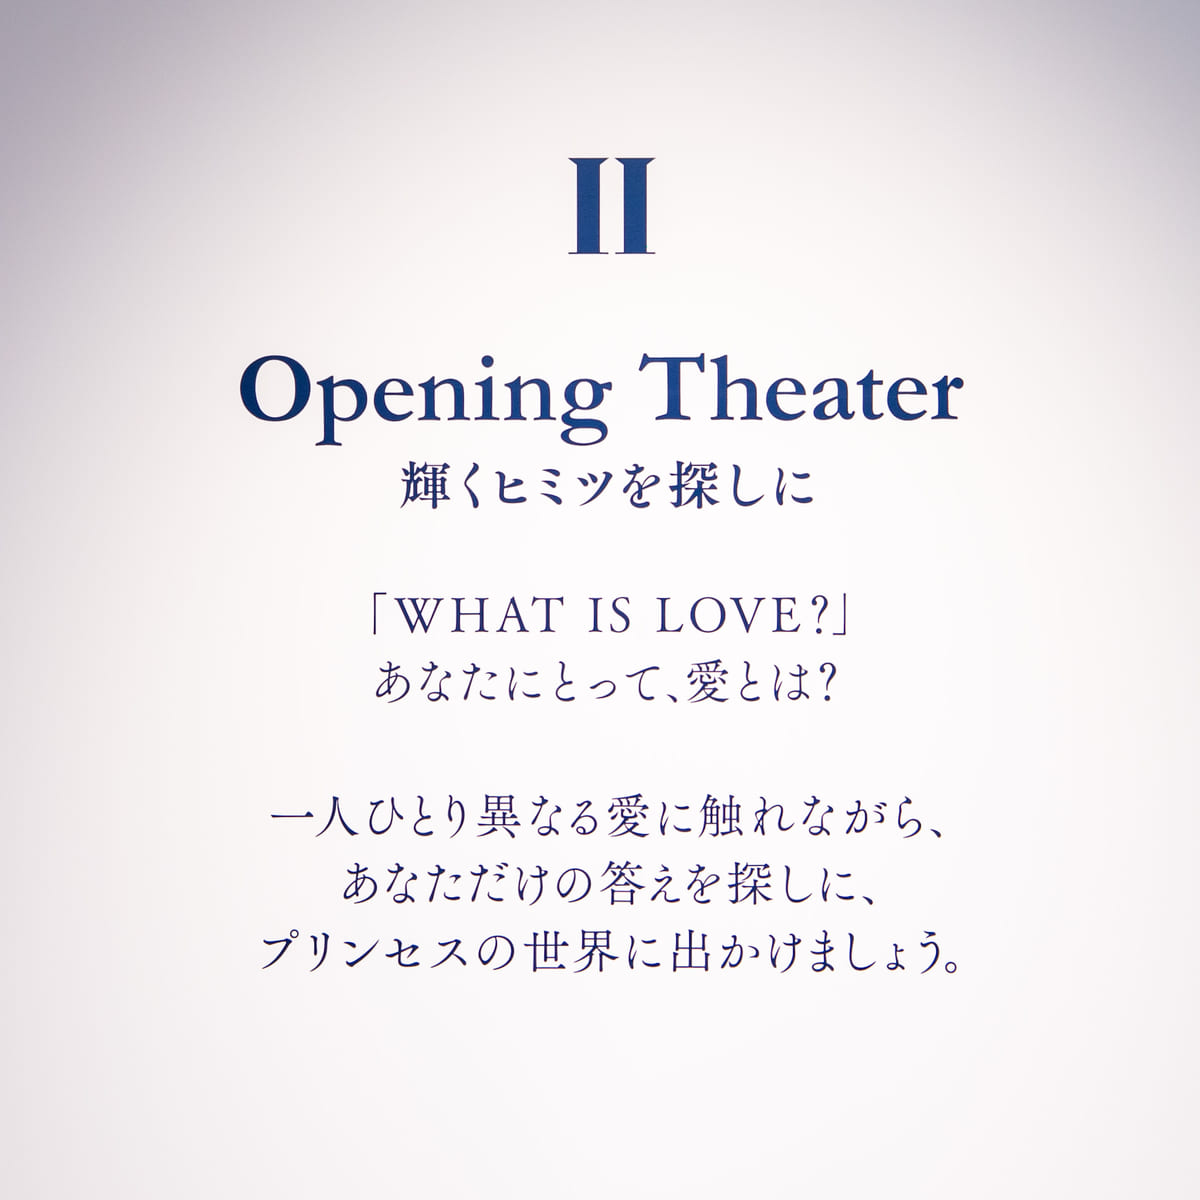 2. Opening Theater　～輝くヒミツを探しに〜